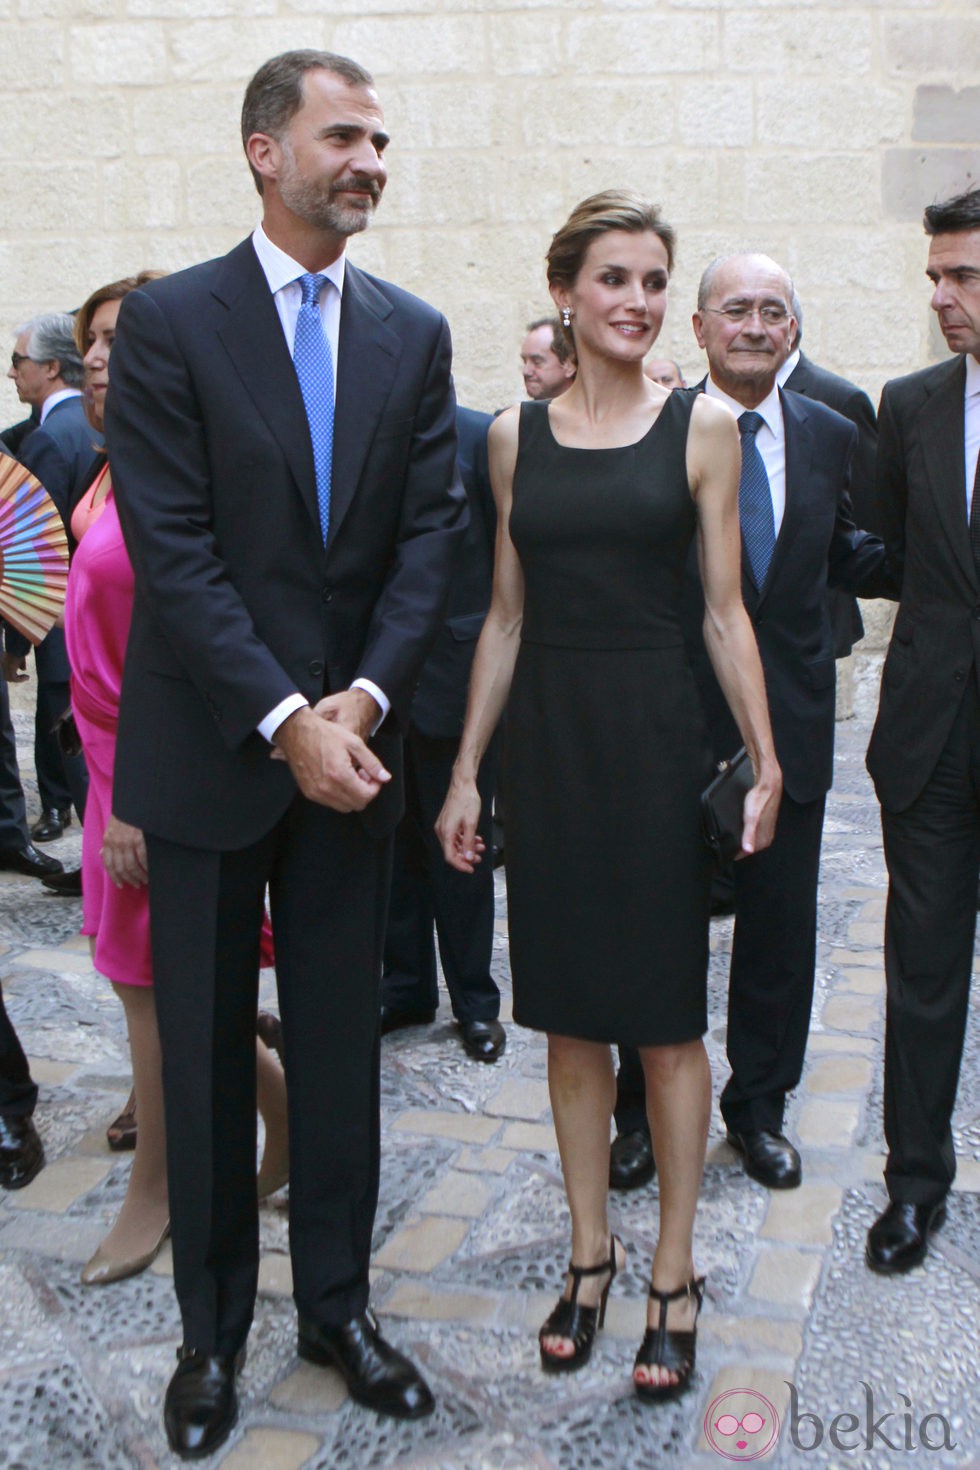 Los Reyes Felipe y Letizia en su primer acto oficial juntos tras pasar su primer verano como Reyes de España